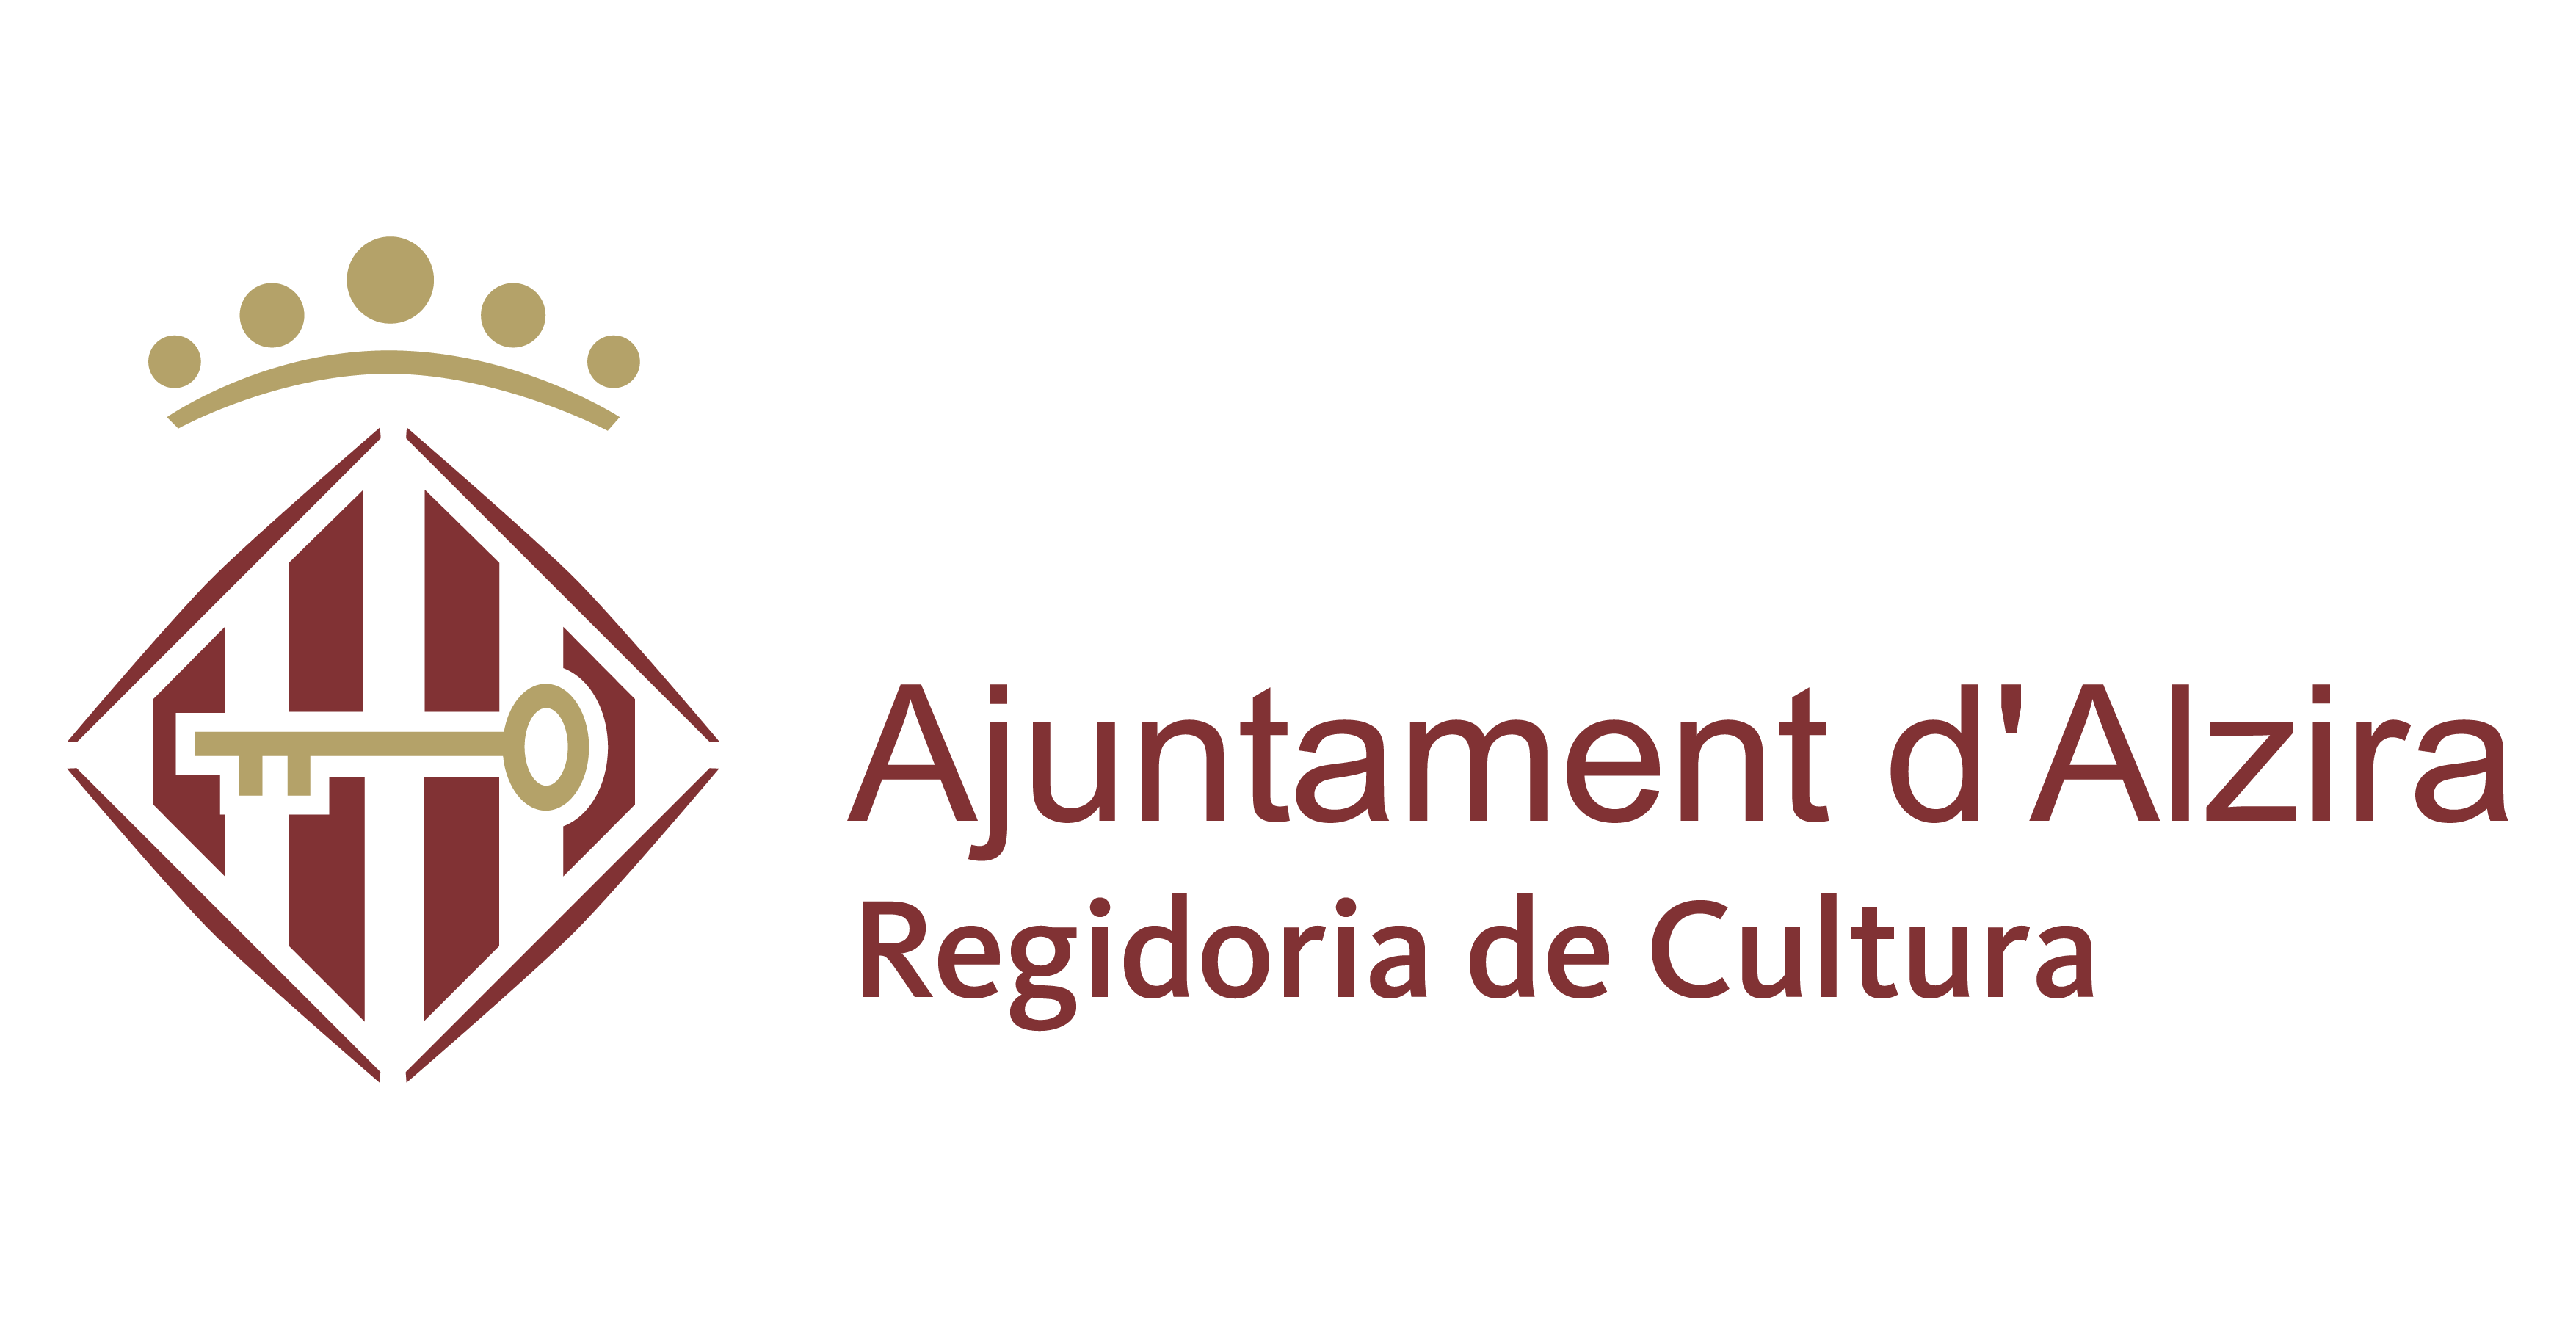 Regidoria de Cultura - - Ajuntament d'Alzira